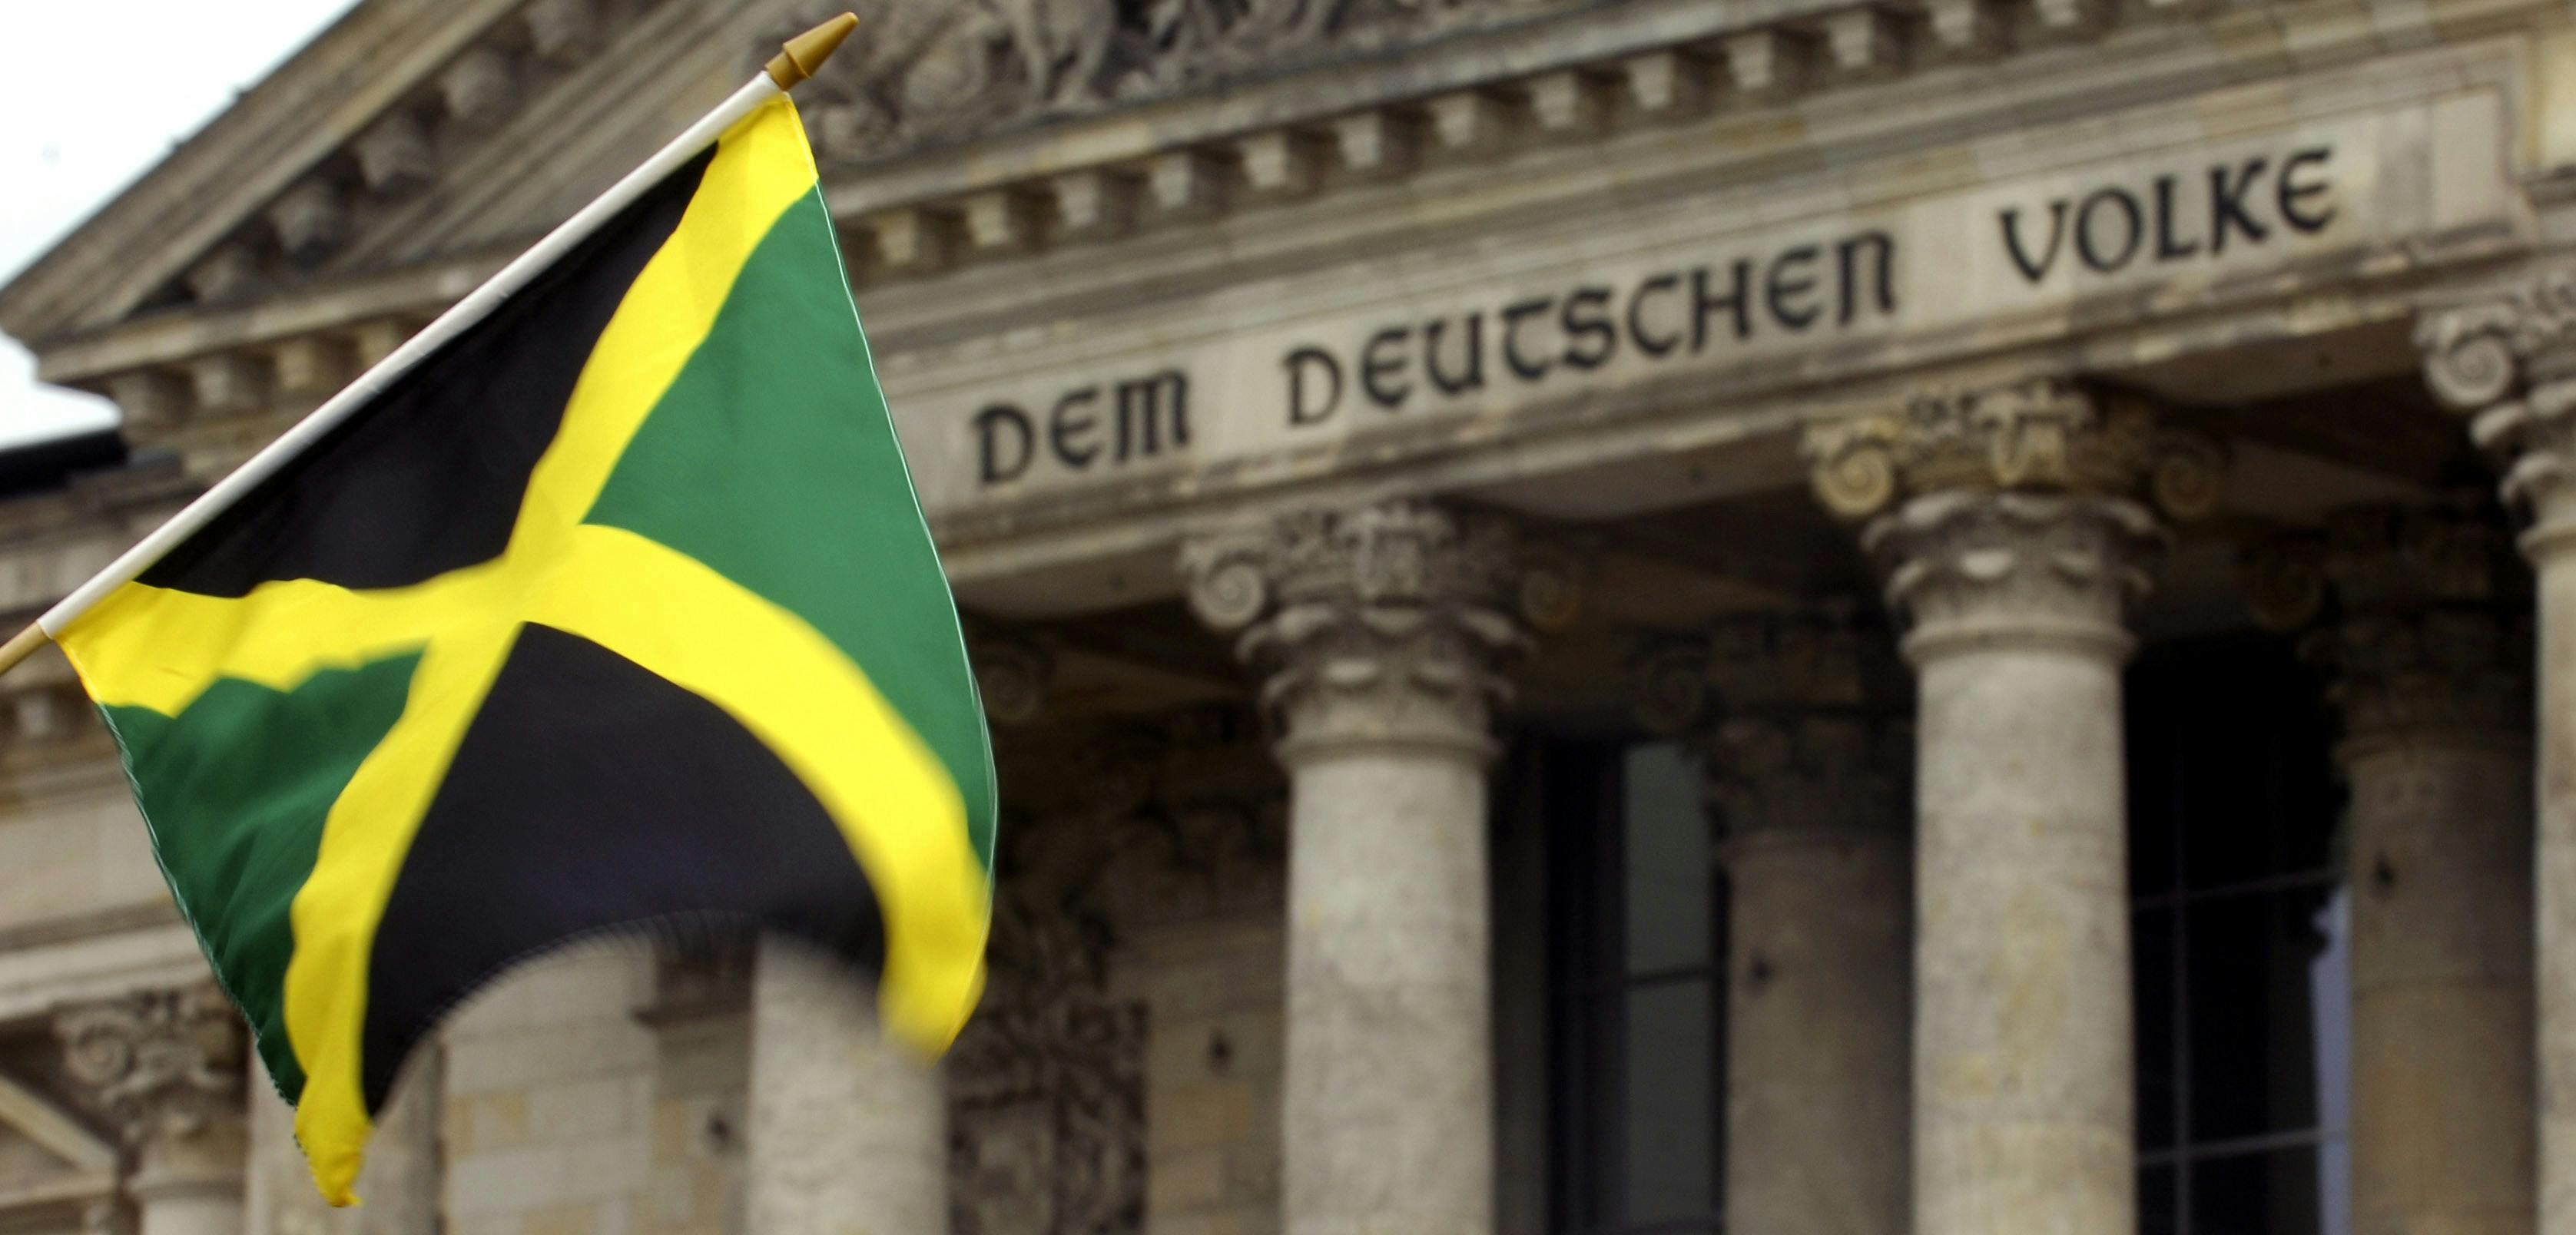 Eine Jamaika-Flagge wird vor das Reichstagsgebäude in Berlin gehalten. Auf dem Gebäude ist der Schriftzug "Dem deutschen Volke" zu sehen.